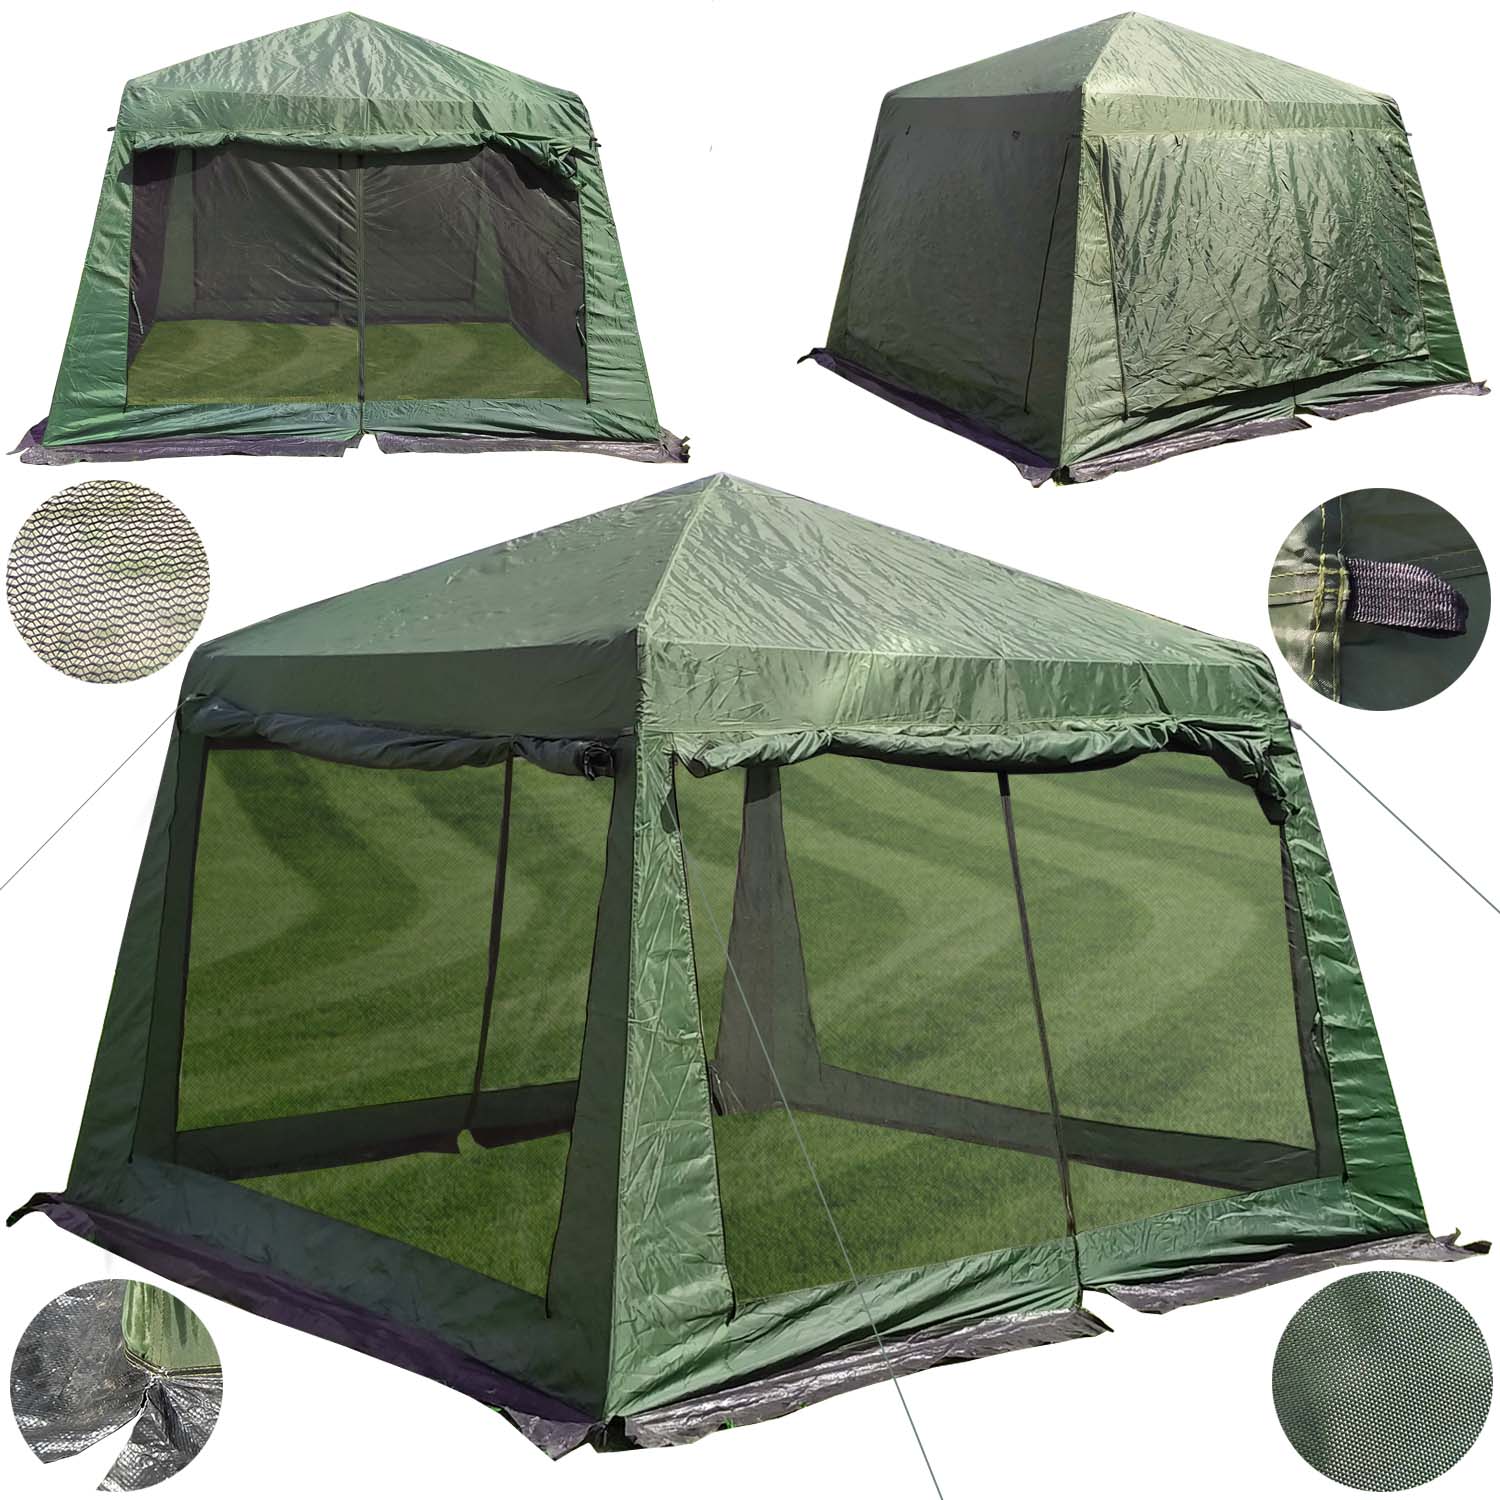 8(499)9387578 Купить шатер с москитной сеткой - беседка coolwalk d 320см-320см-240см от  - заказать